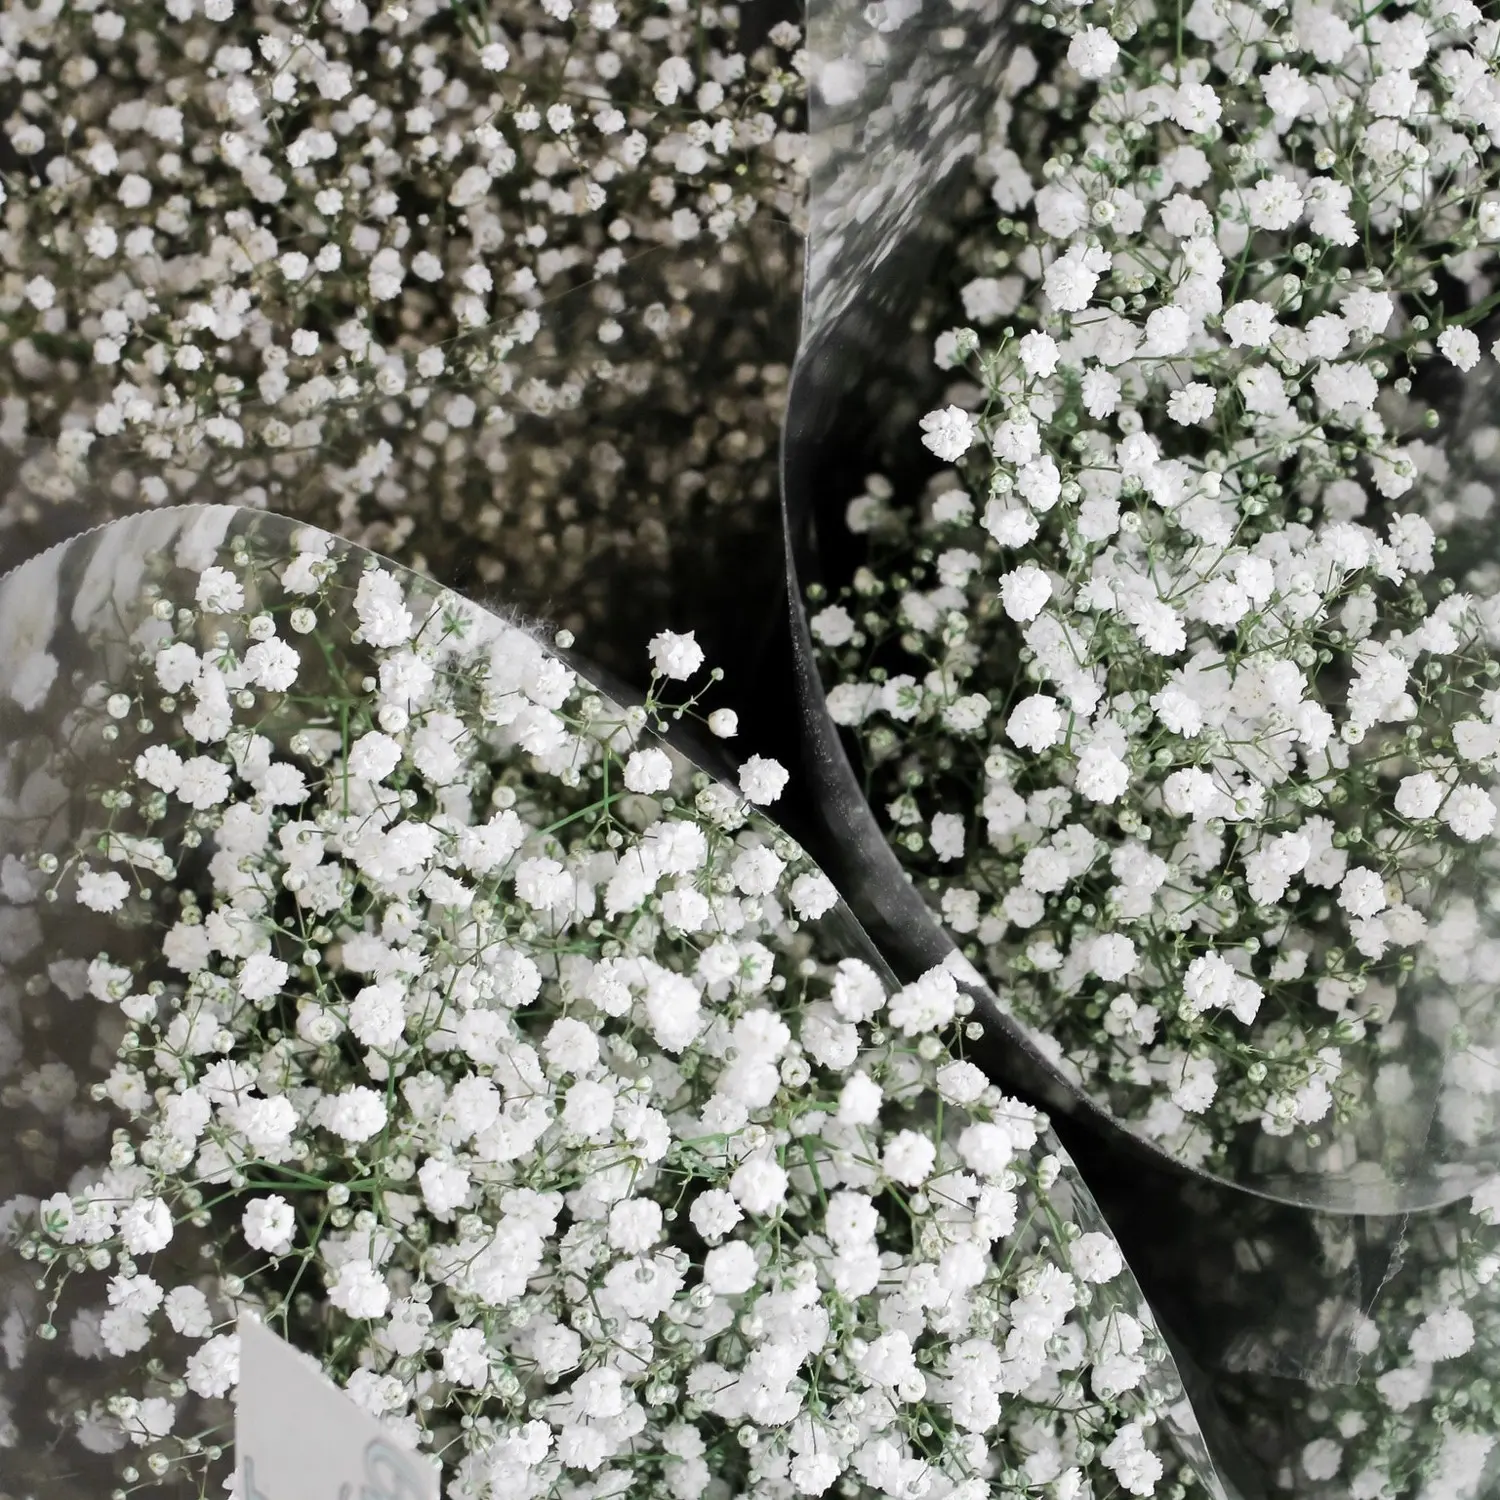 velo di sposa fiore - Come conservare il velo da sposa fiore